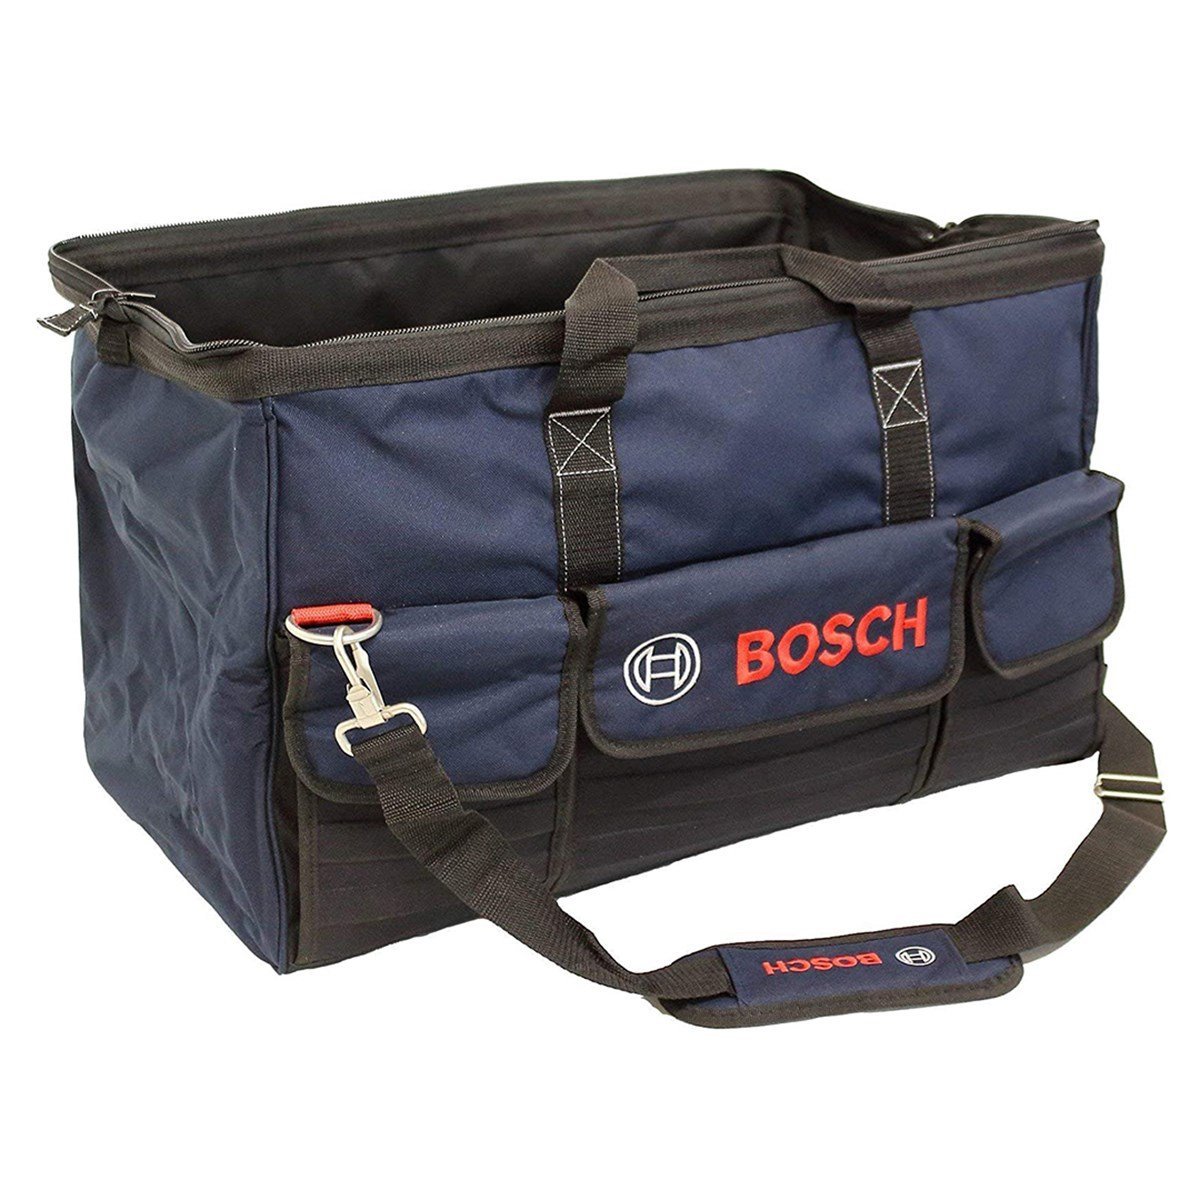 Bosch Tasche Professional Alet Çantası M Beden - 1600a003bj - 7Kat